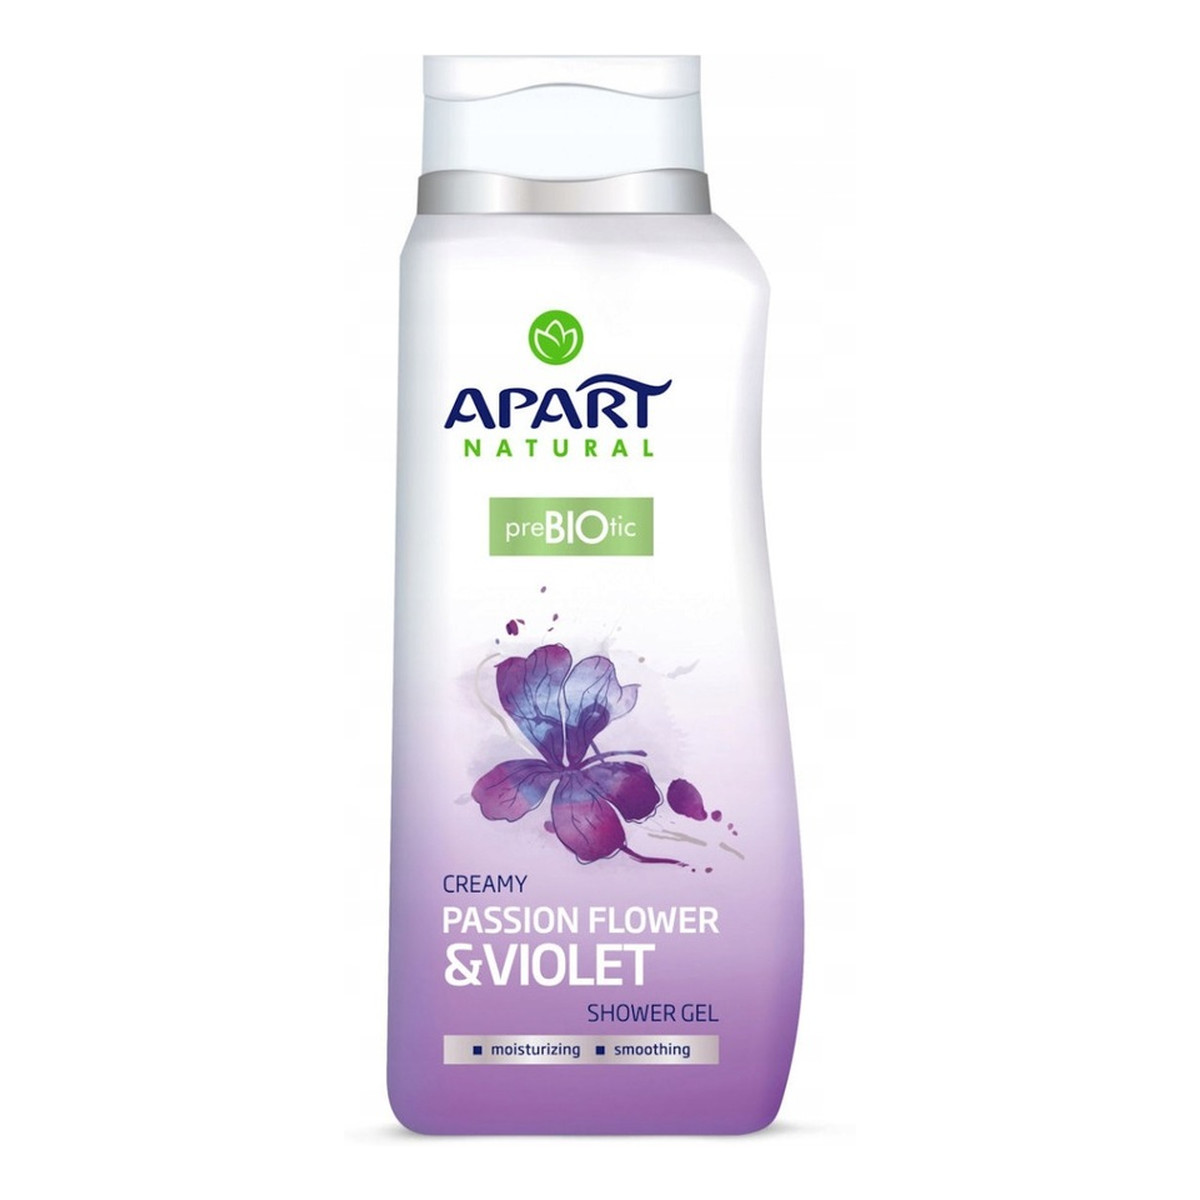 Apart Natural Prebiotic żel pod prysznic Passion Flower & Violet 400ml